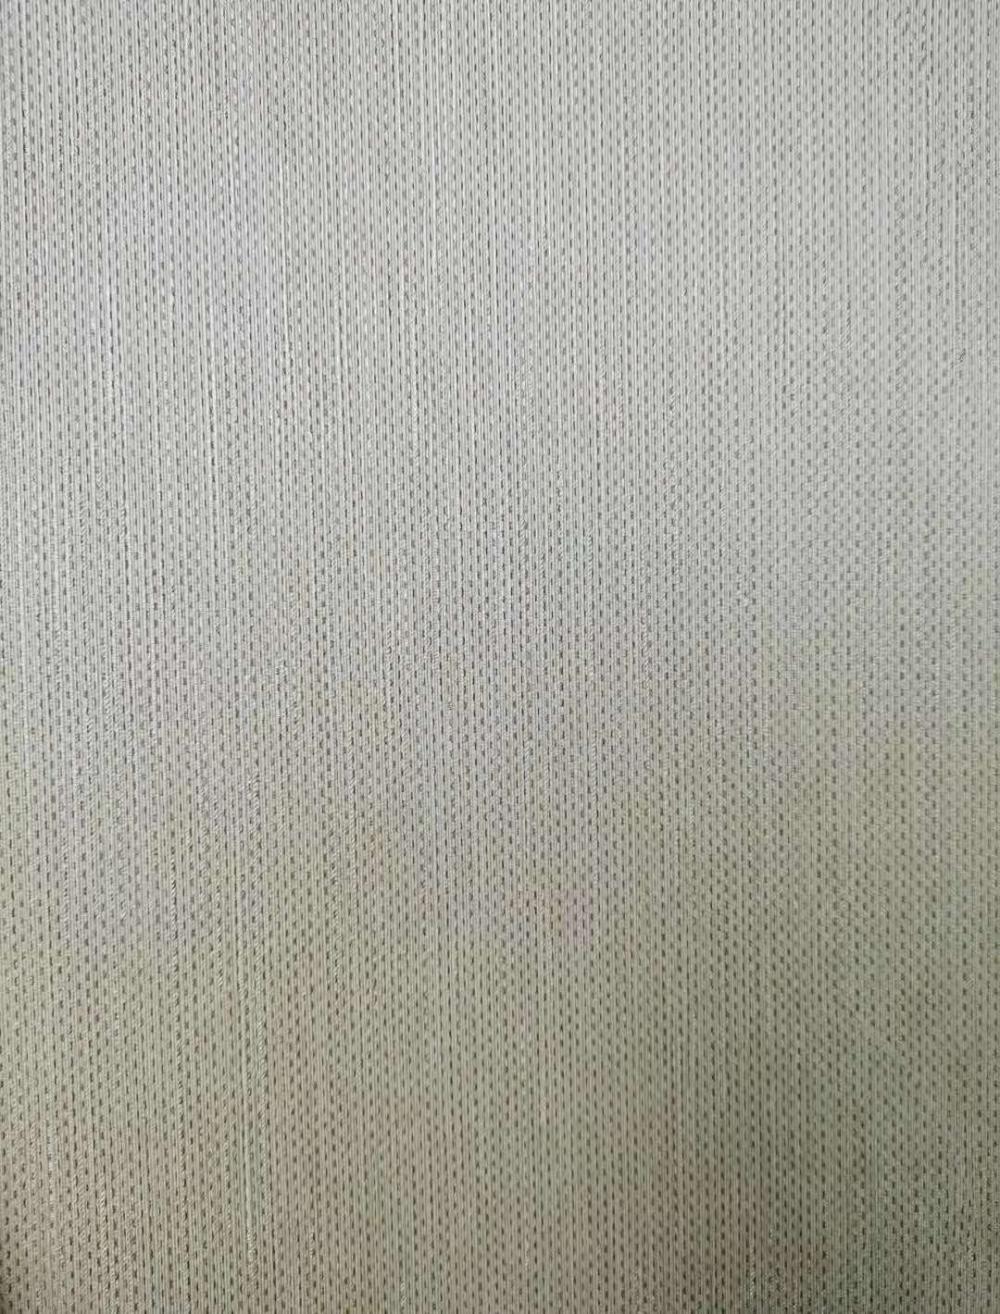 137 سنتيمتر تجاري hoteproject wallfabric المدعومة wallcloth